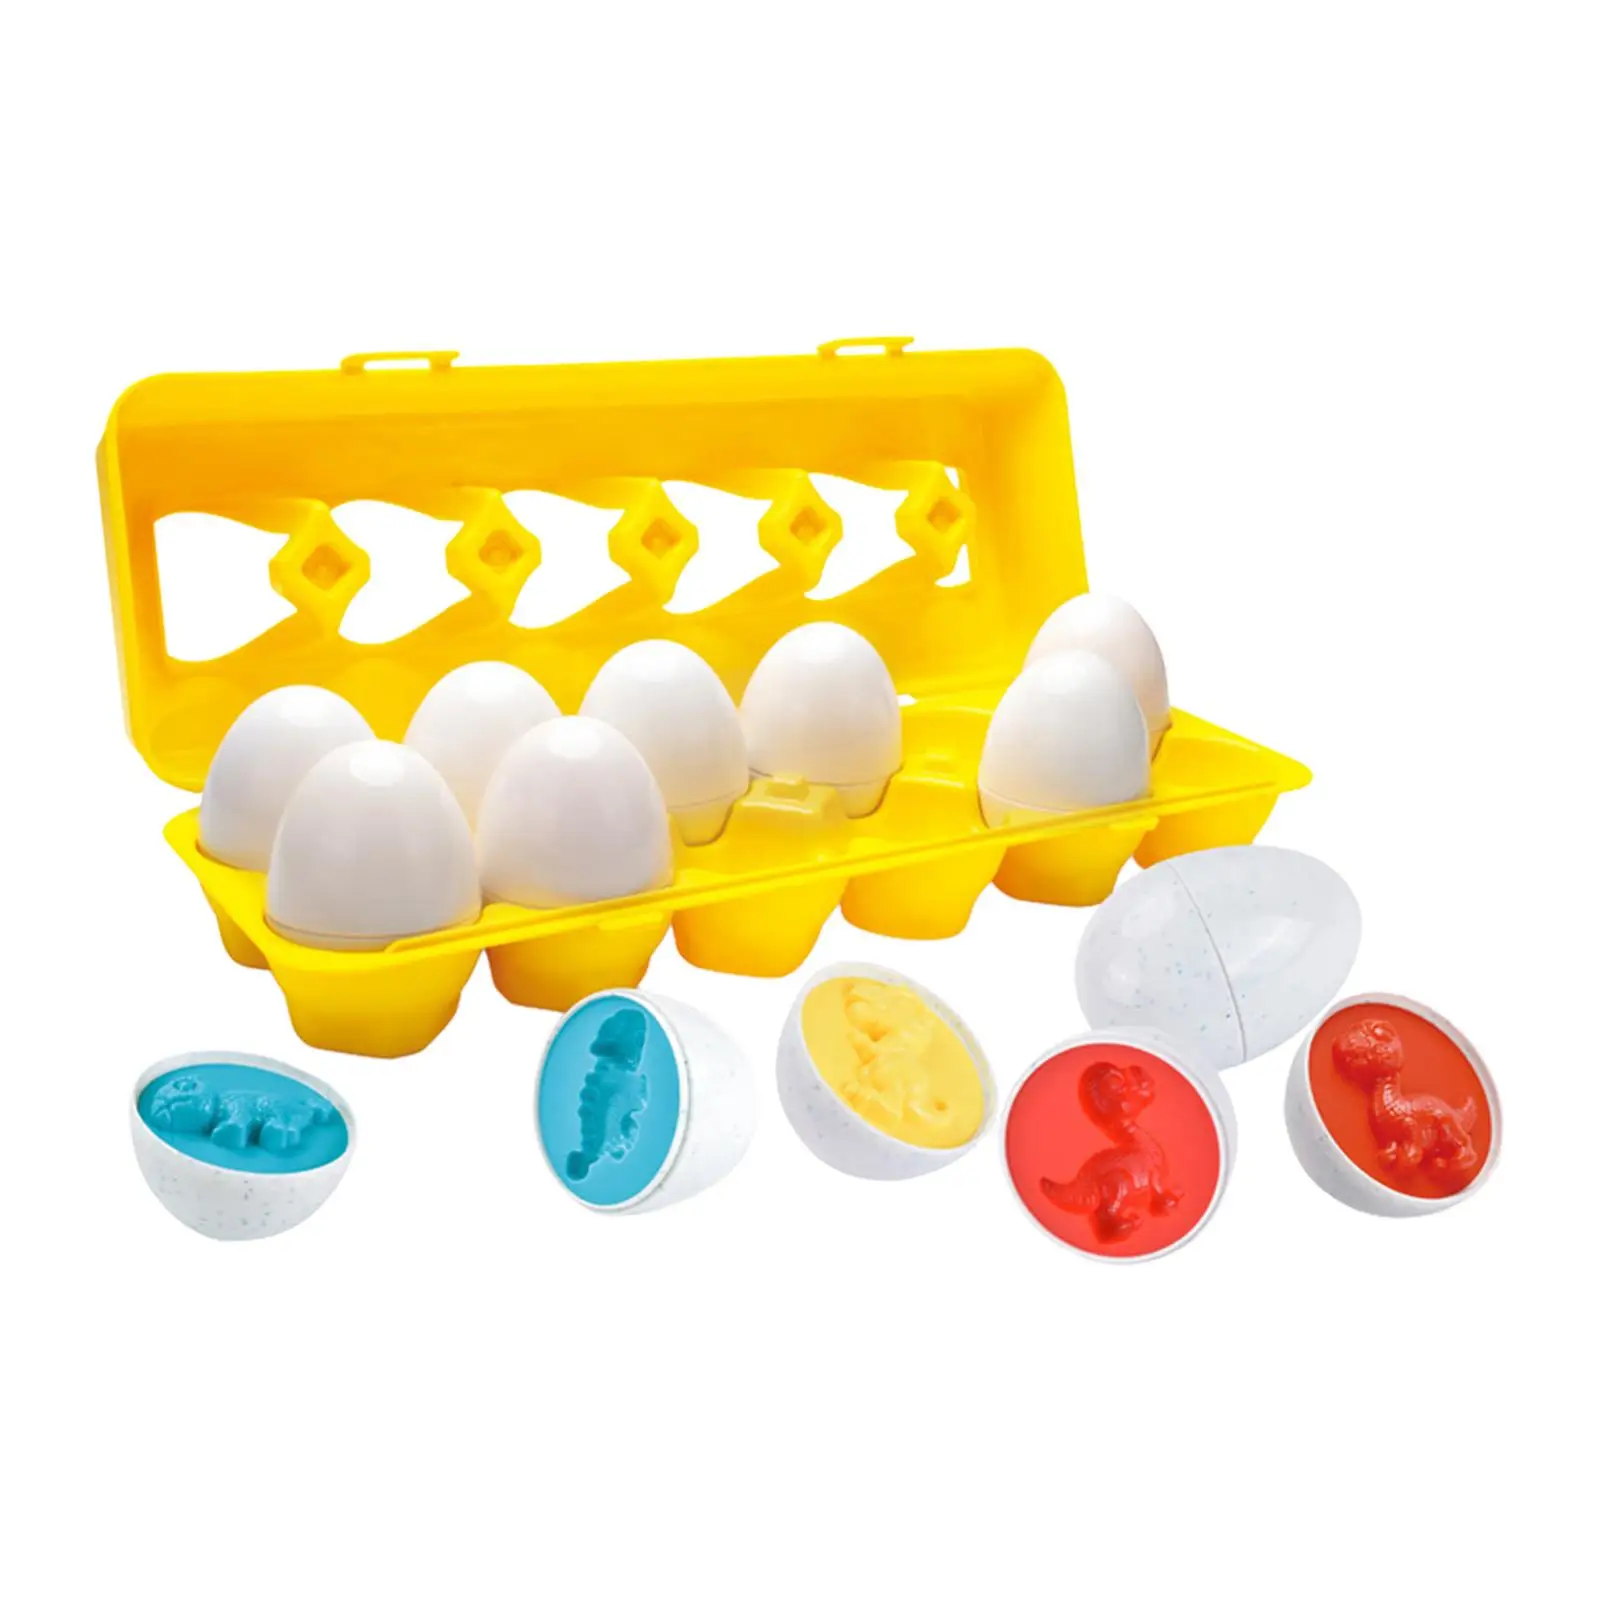 12Pcs Color & Shapes Matching Egg Toy Easter Eggs Educational for Children Infant Easter Basket Gift Kindergarten Preschool